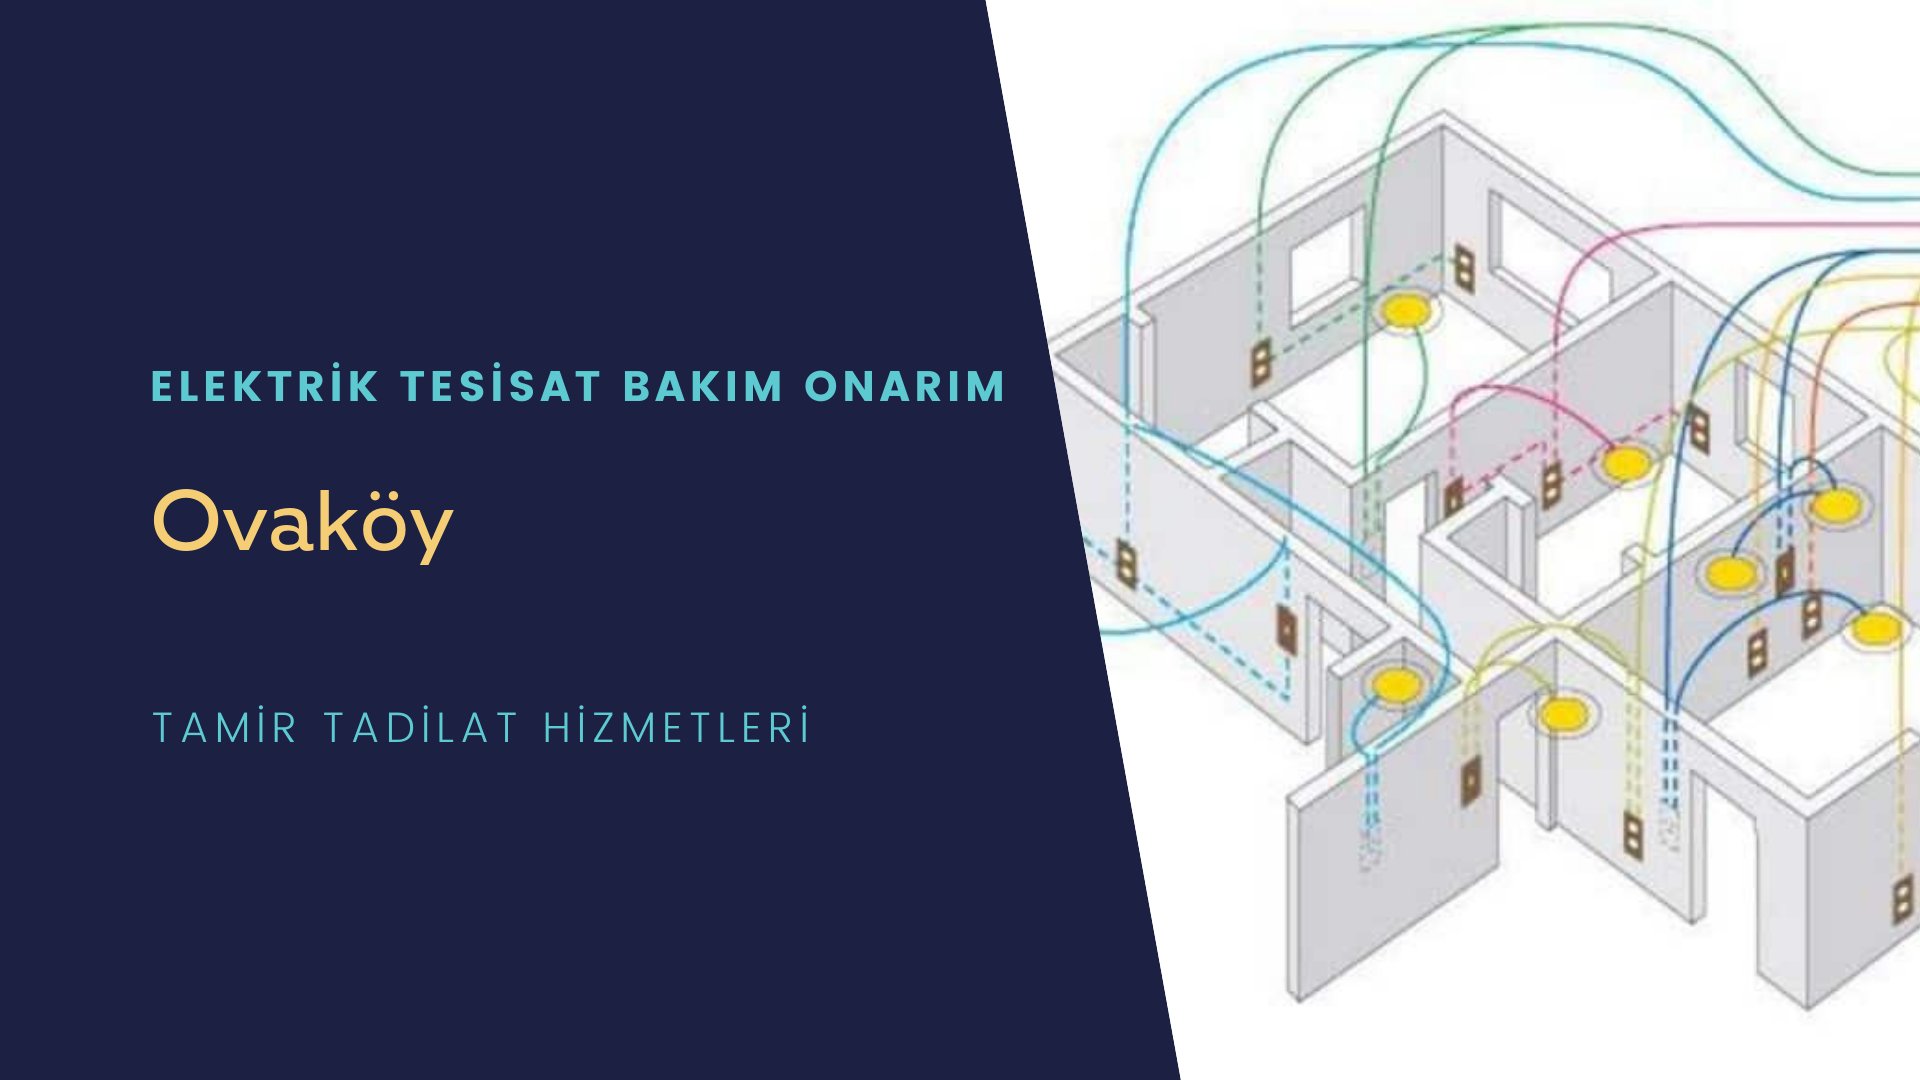 Ovaköy'de elektrik tesisatı ustalarımı arıyorsunuz doğru adrestenizi Ovaköy elektrik tesisatı ustalarımız 7/24 sizlere hizmet vermekten mutluluk duyar.